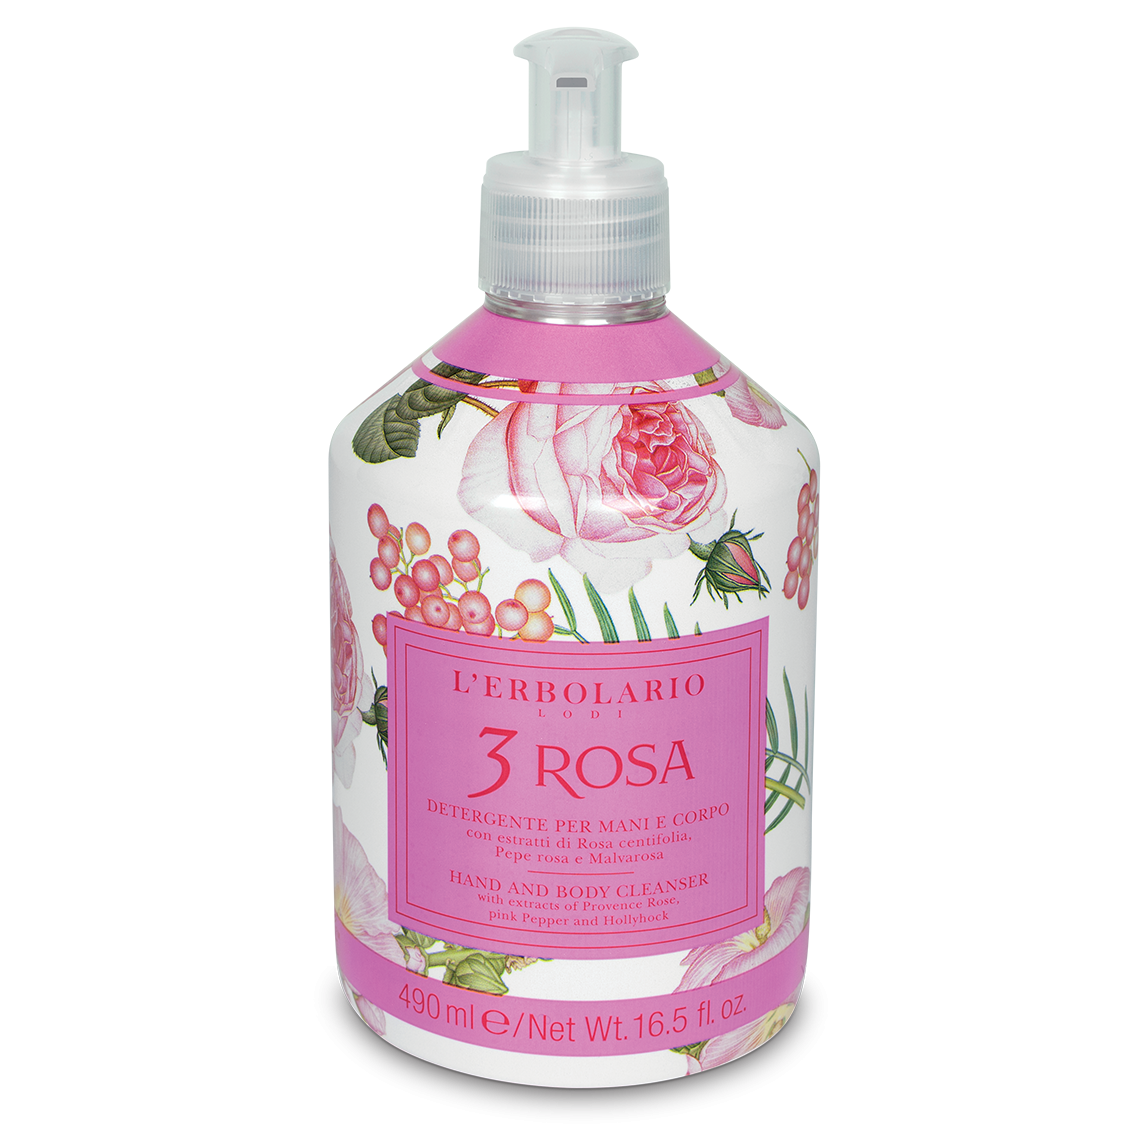 L'Erbolario - Detergente Mani e Corpo 3 Rosa - 490 ml